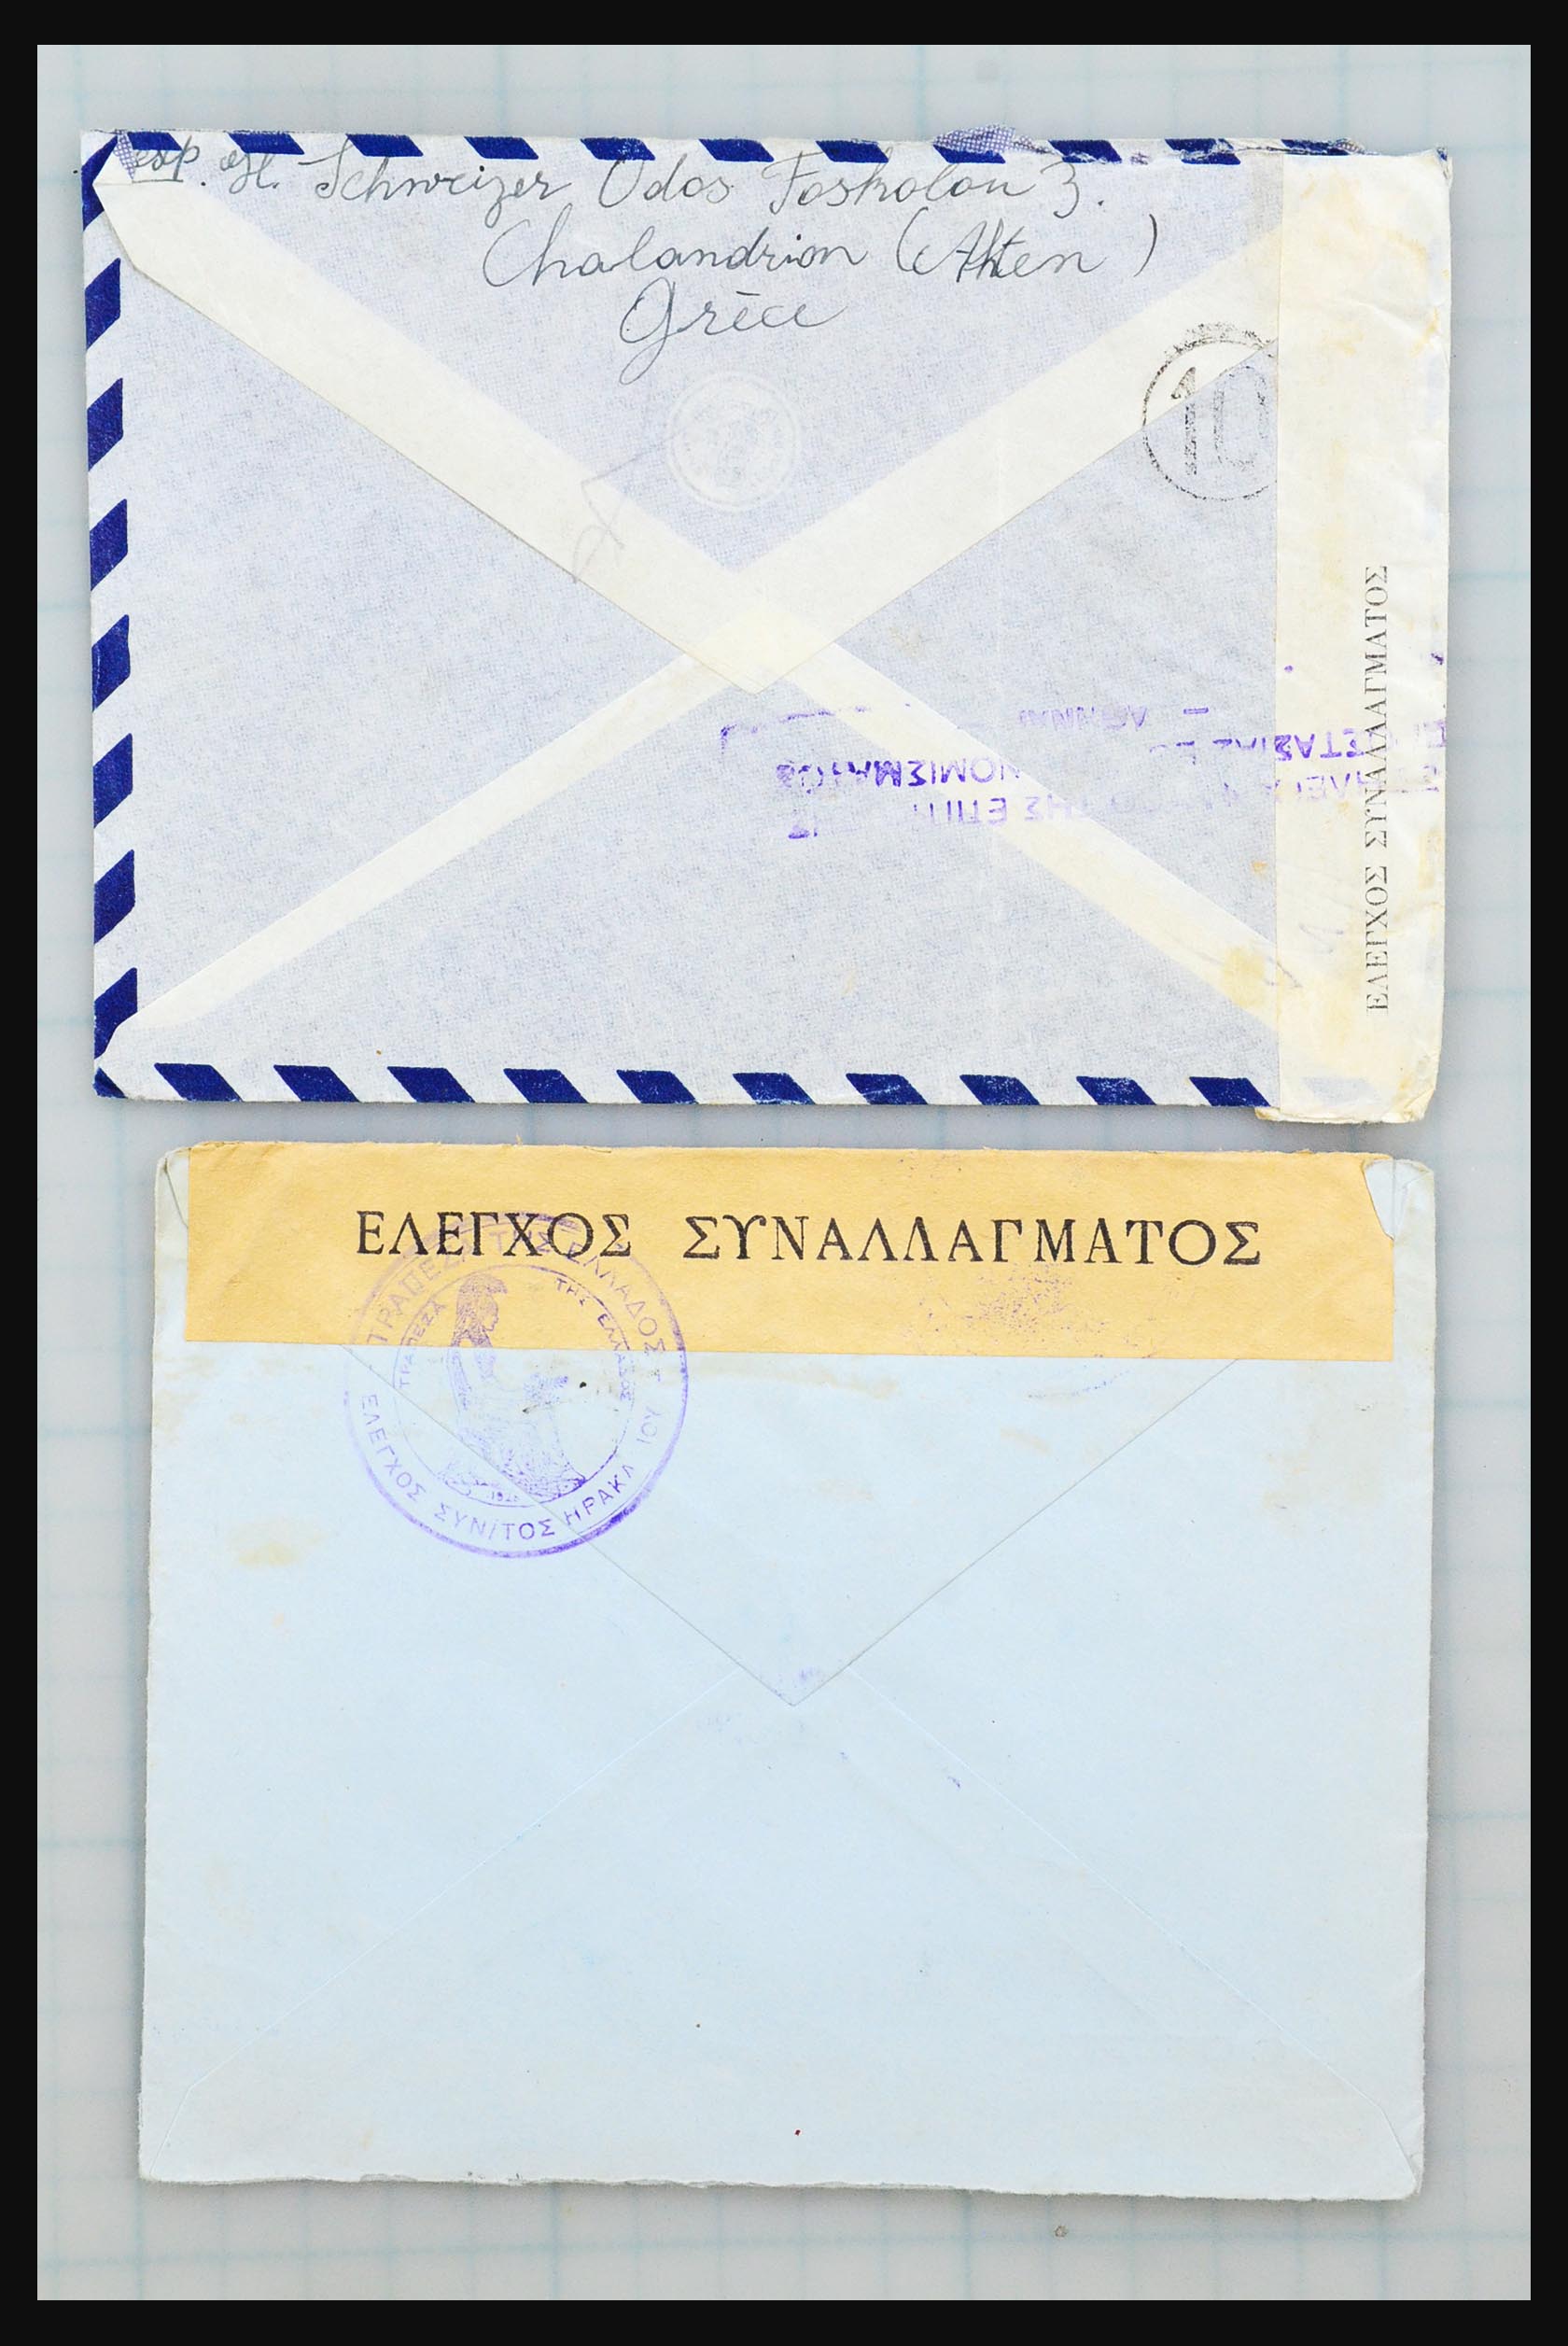 31358 035 - 31358 Portugal/Luxemburg/Griekenland brieven 1880-1960.